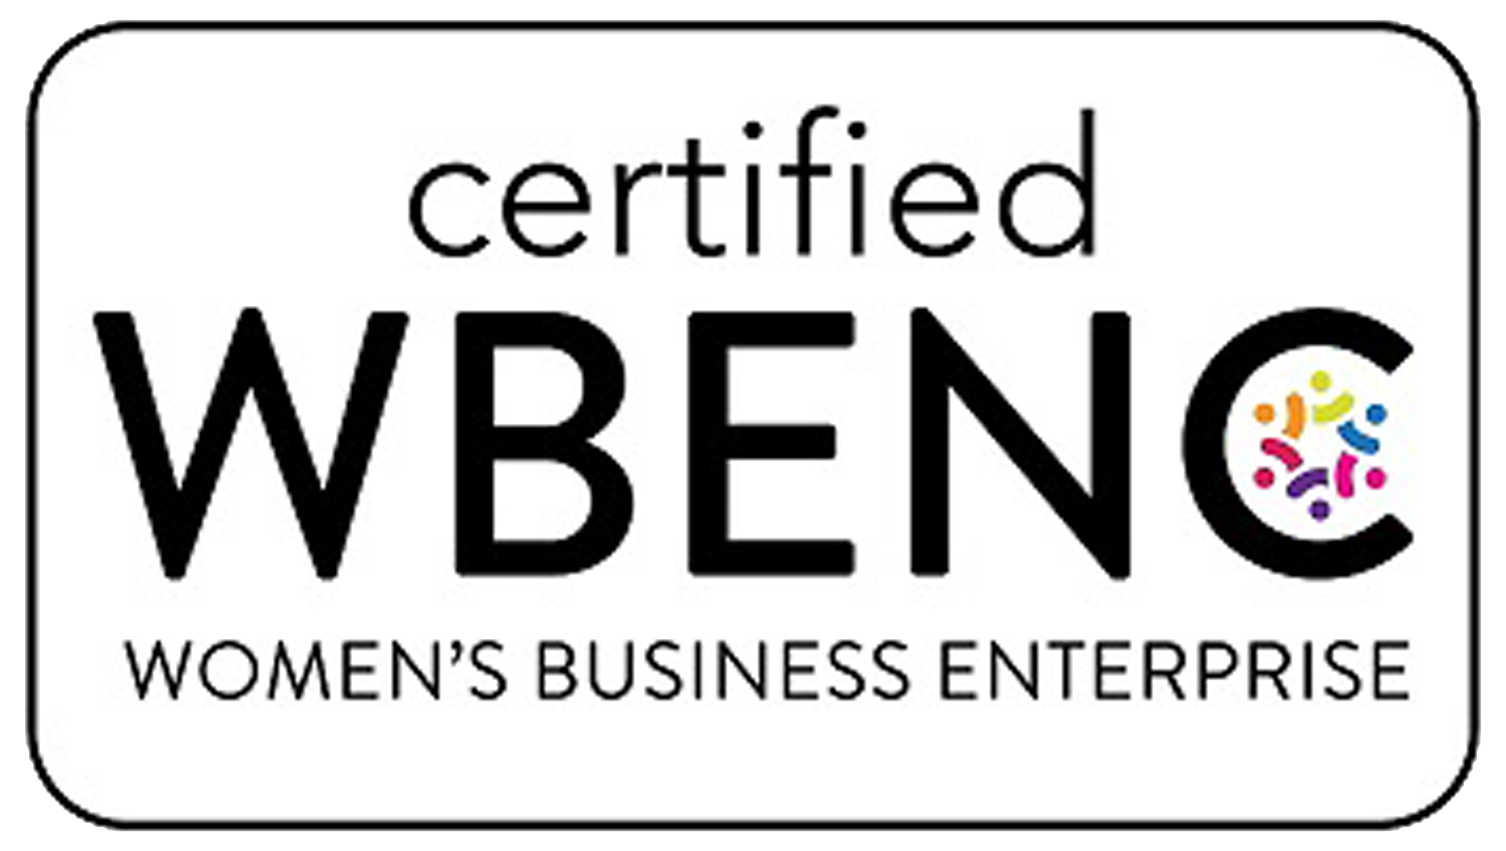 A certified wben logo is shown.